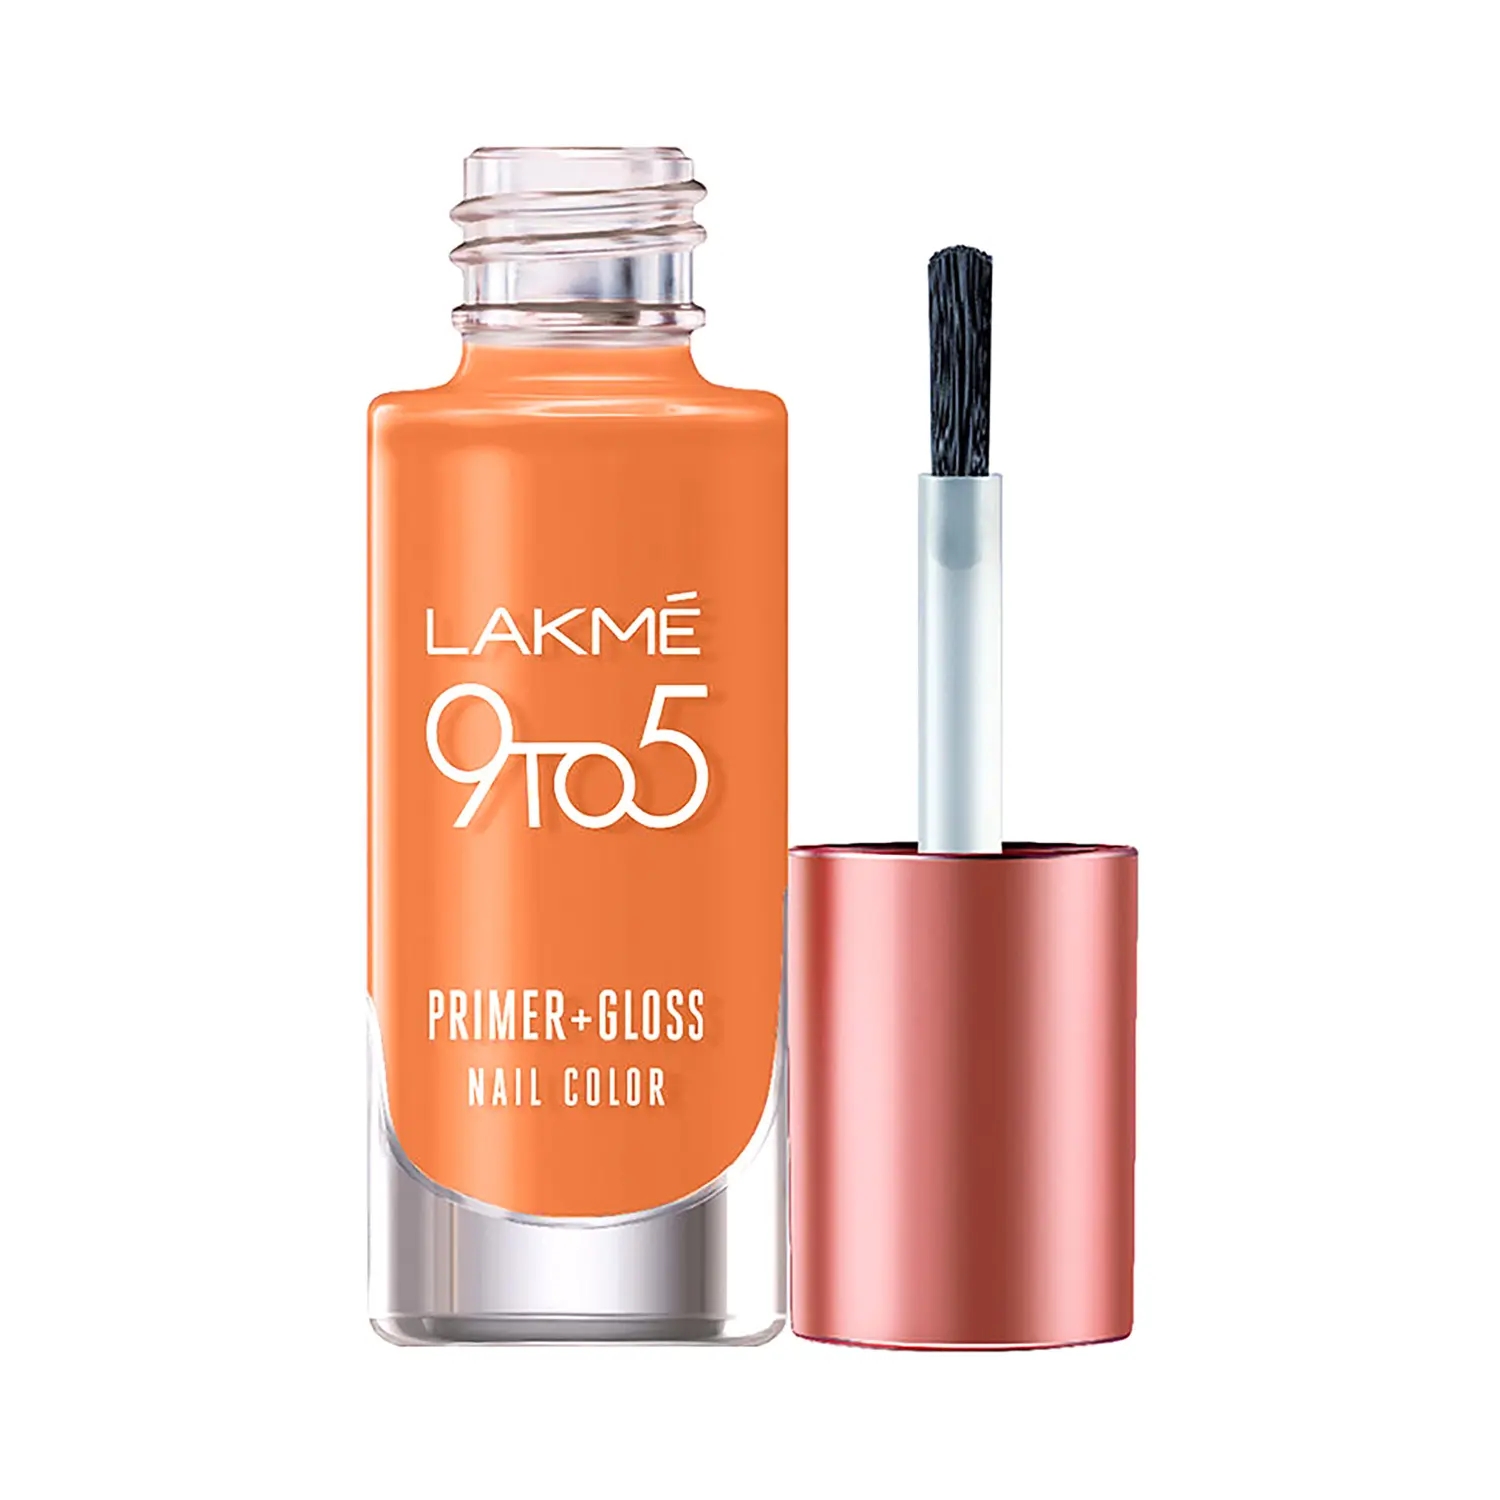 Lakme | Lakme 9To5 Primer + Gloss Nail Color - Peach Puff 6ml